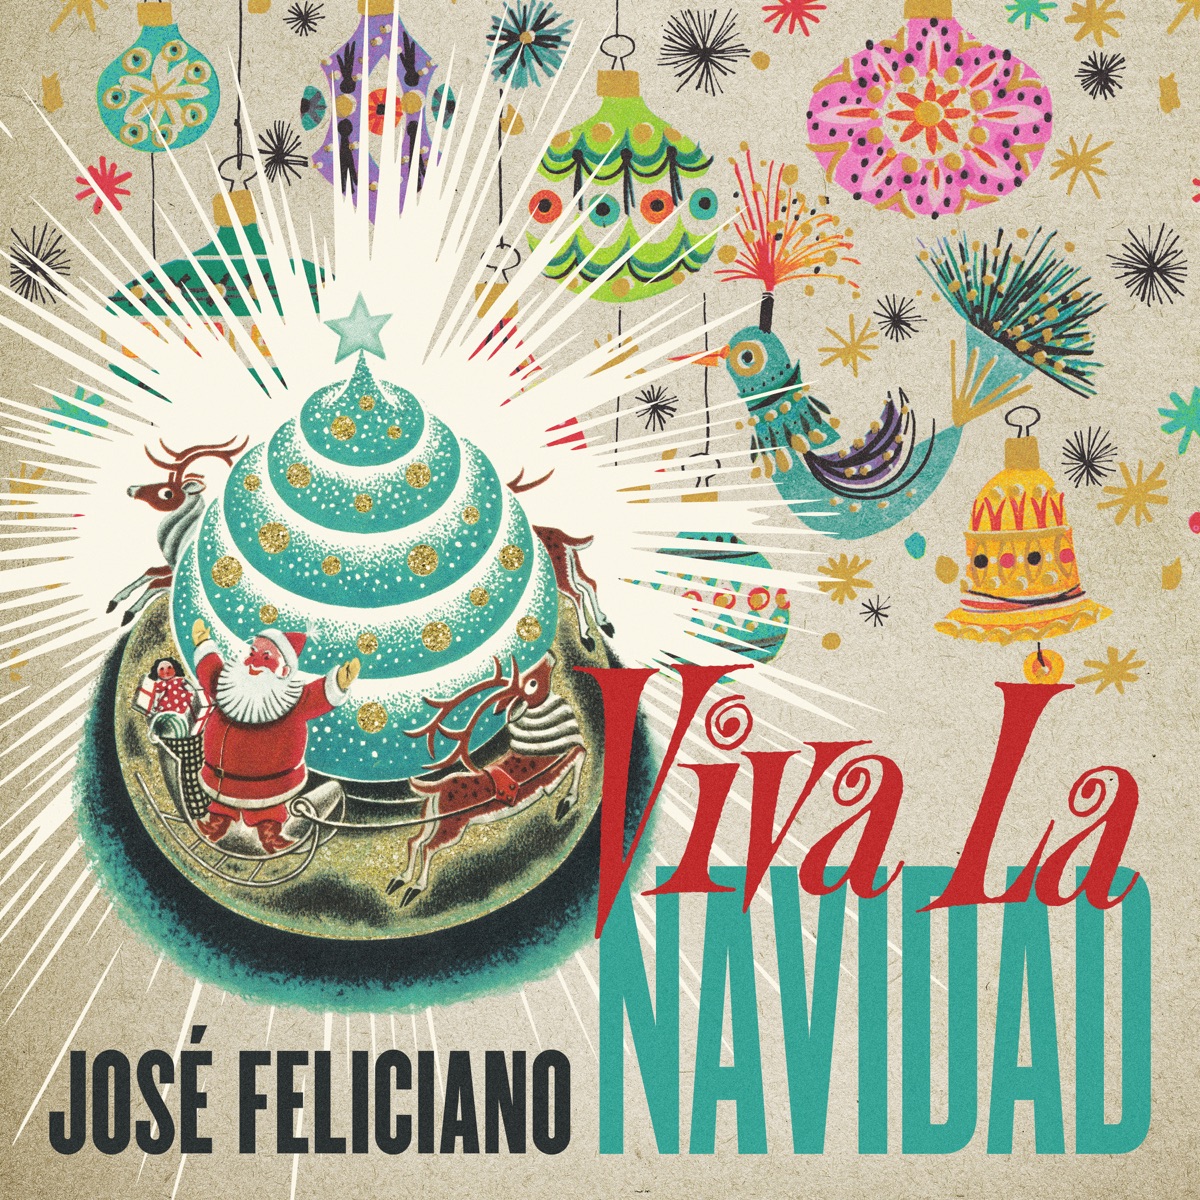 José Feliciano Viva La Navidad cover artwork